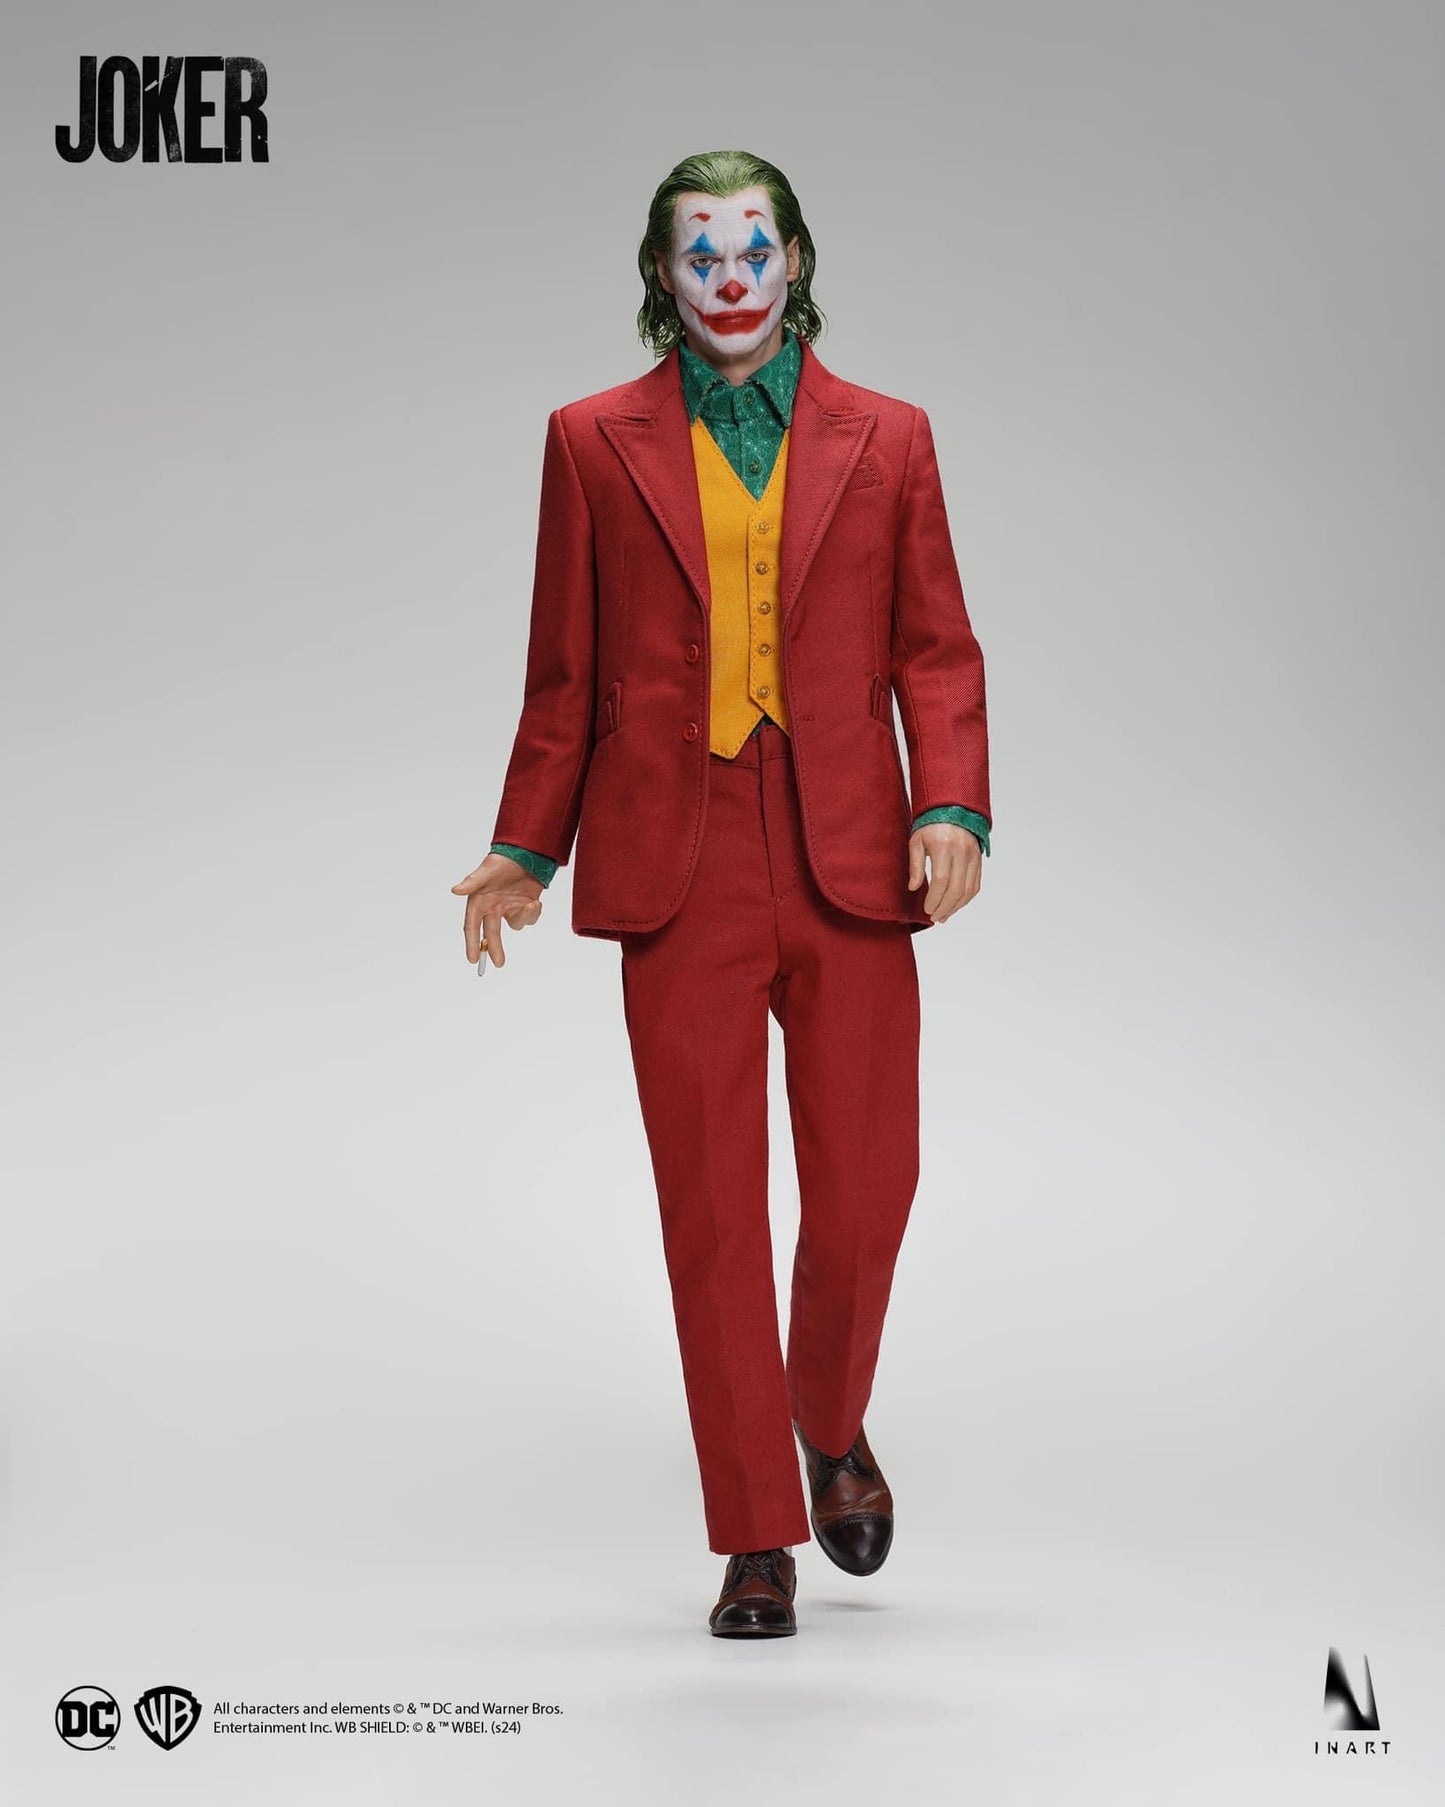 Preventa Set de Figuras Joker 2019 (Deluxe Edition) (Cabello enraizado) (2 figuras) marca Inart escala 1/6